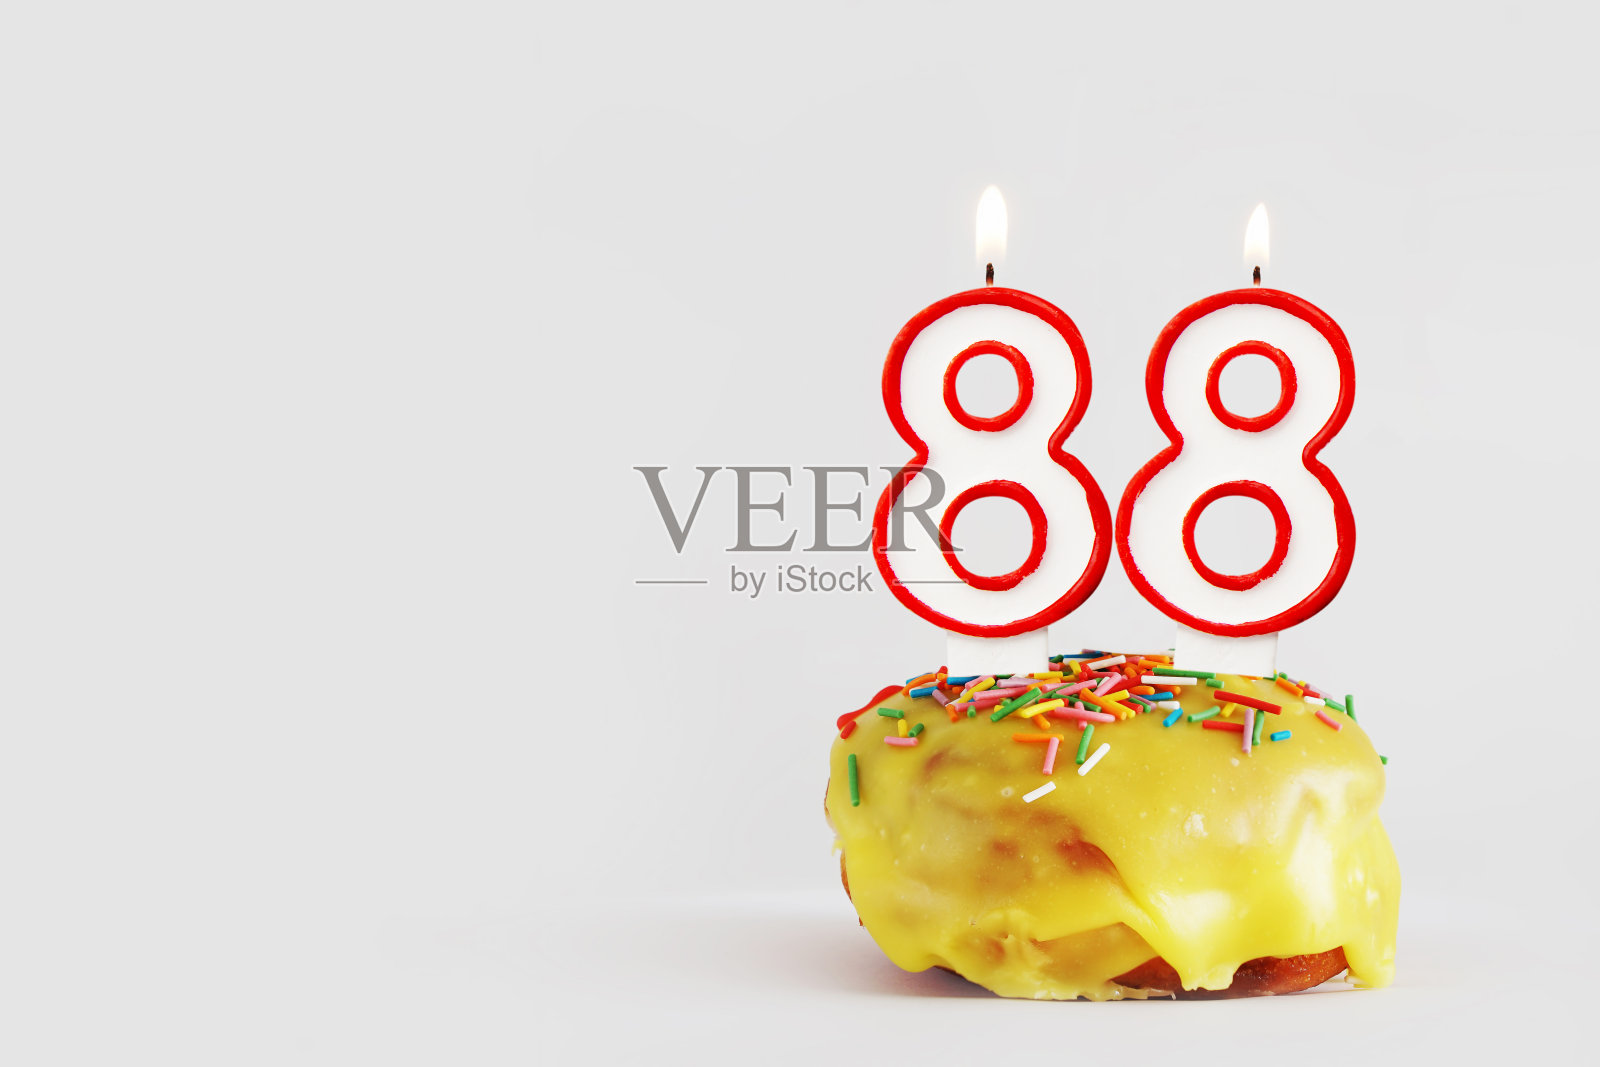 88周年纪念。生日纸杯蛋糕与白色燃烧的蜡烛与红色边框形式的88数字。浅灰色背景与复制空间照片摄影图片